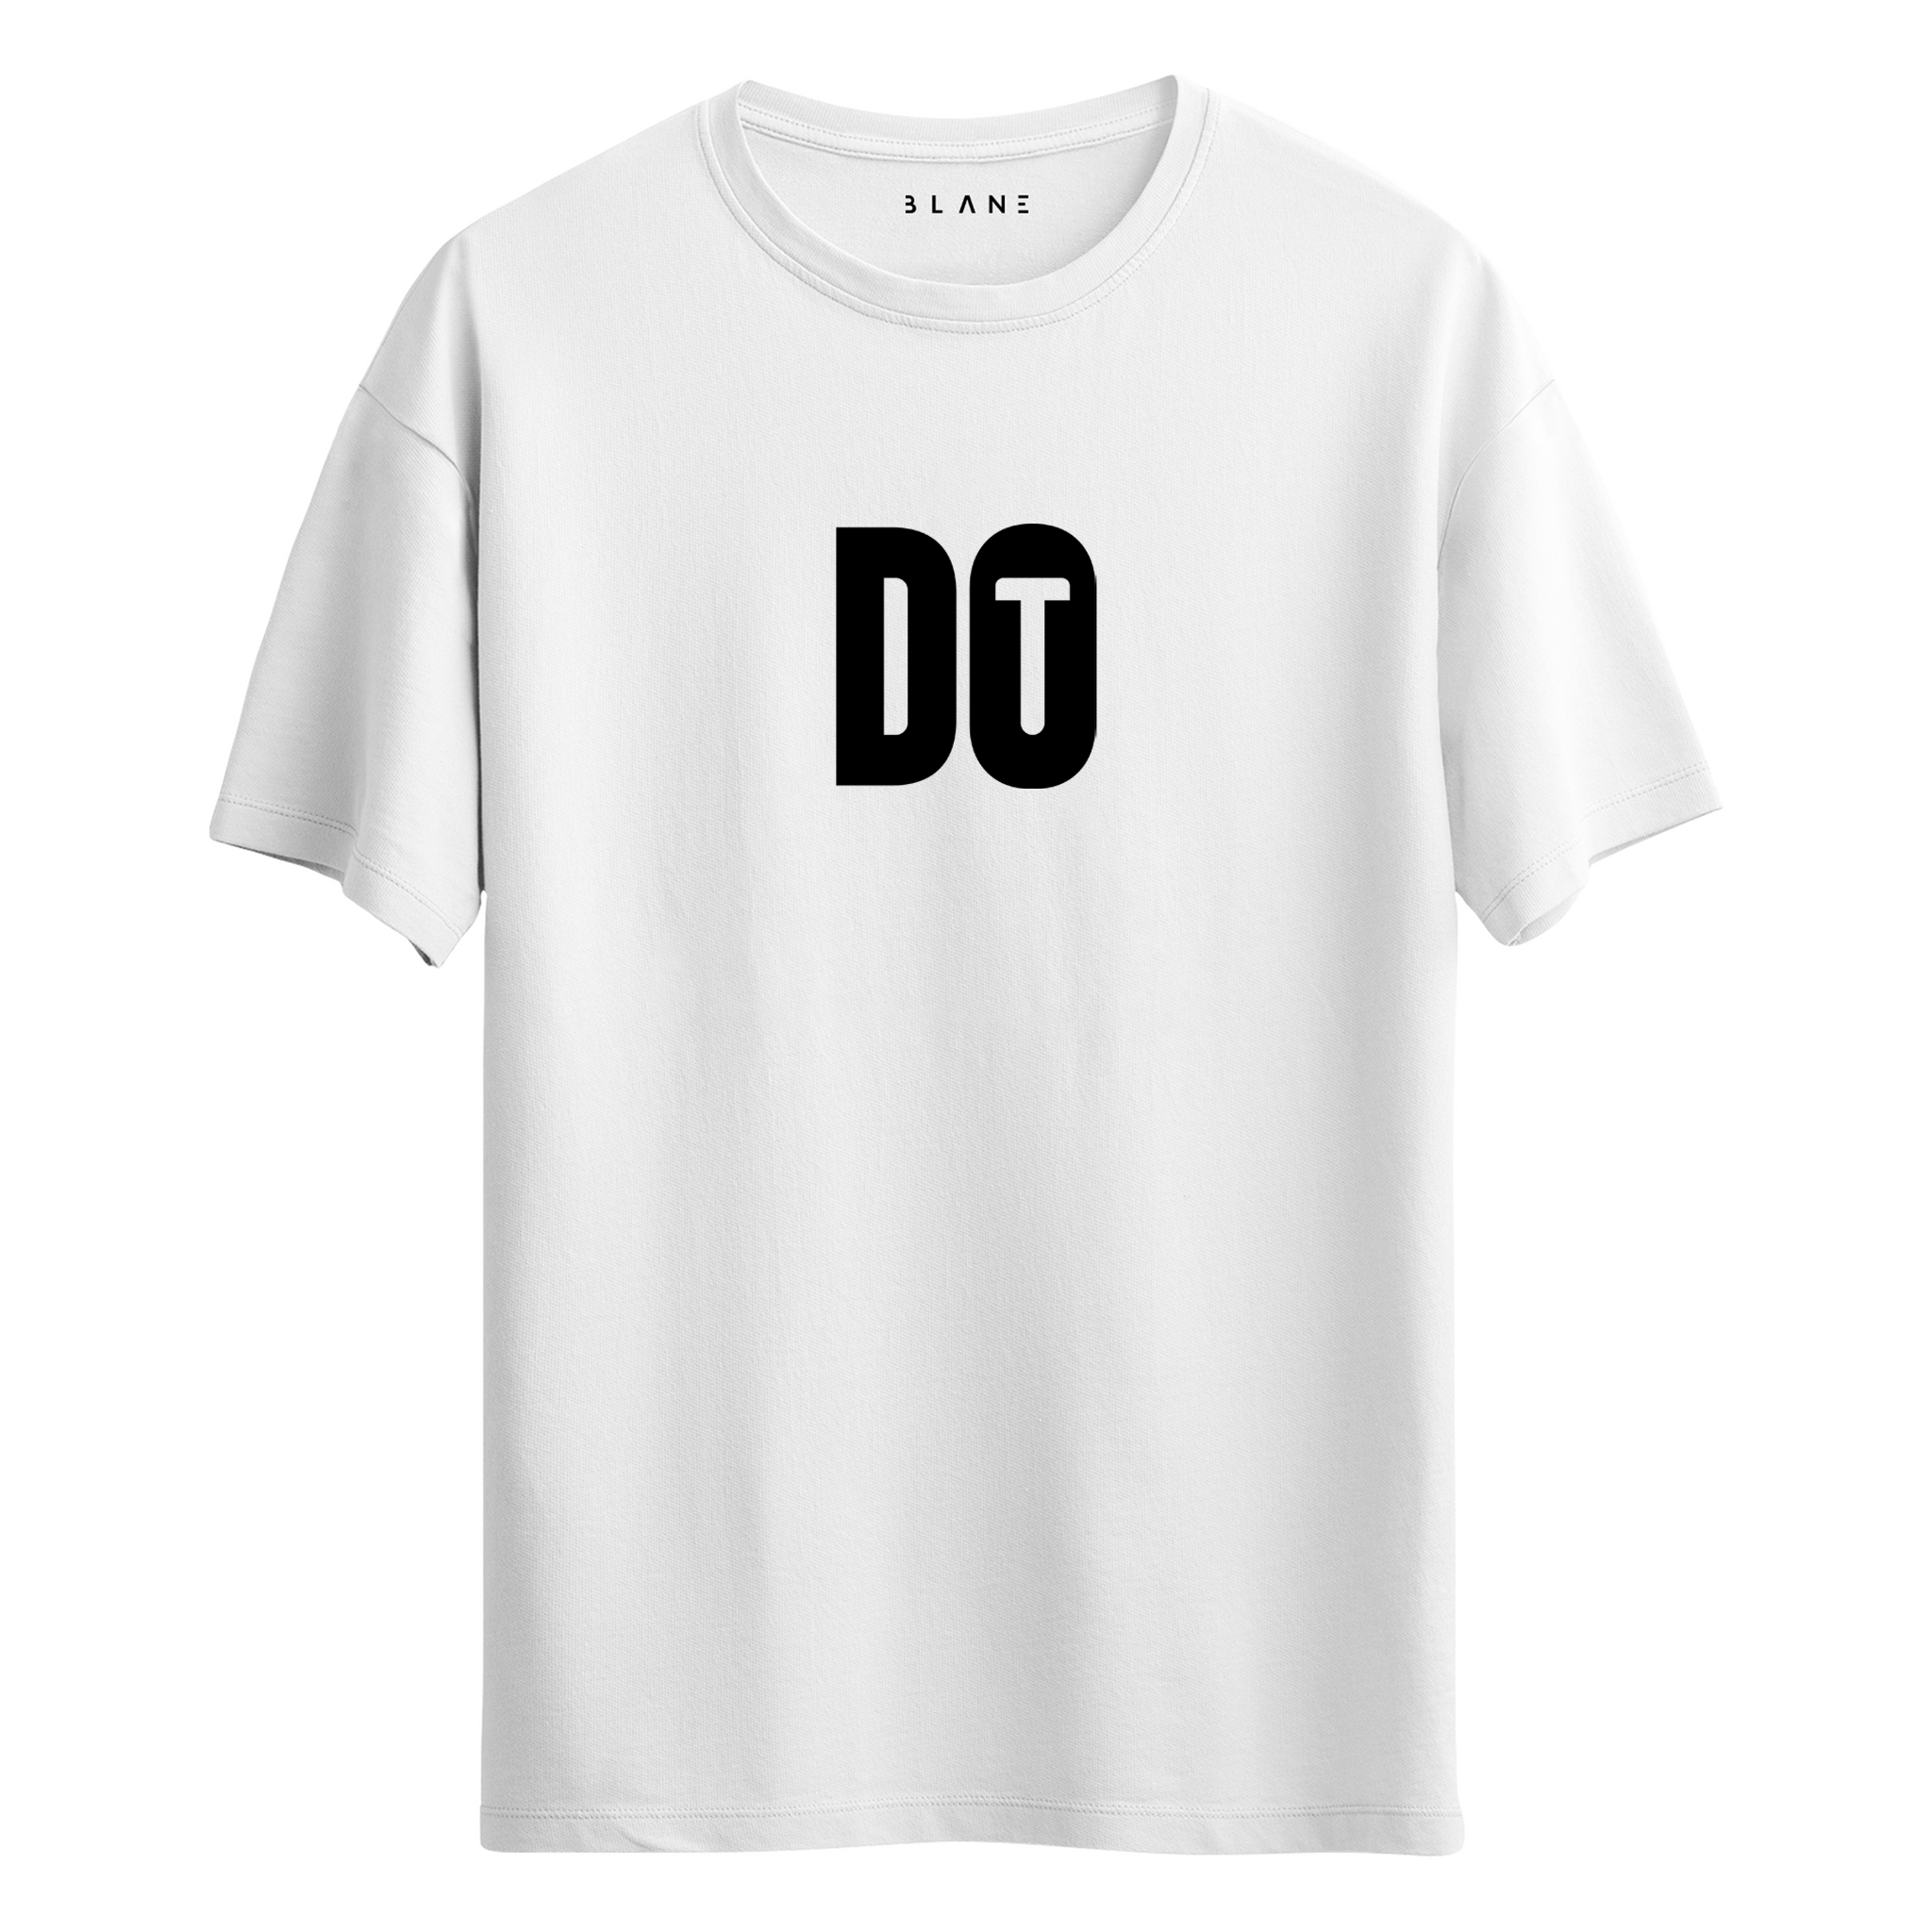 Do It - T-Shirt